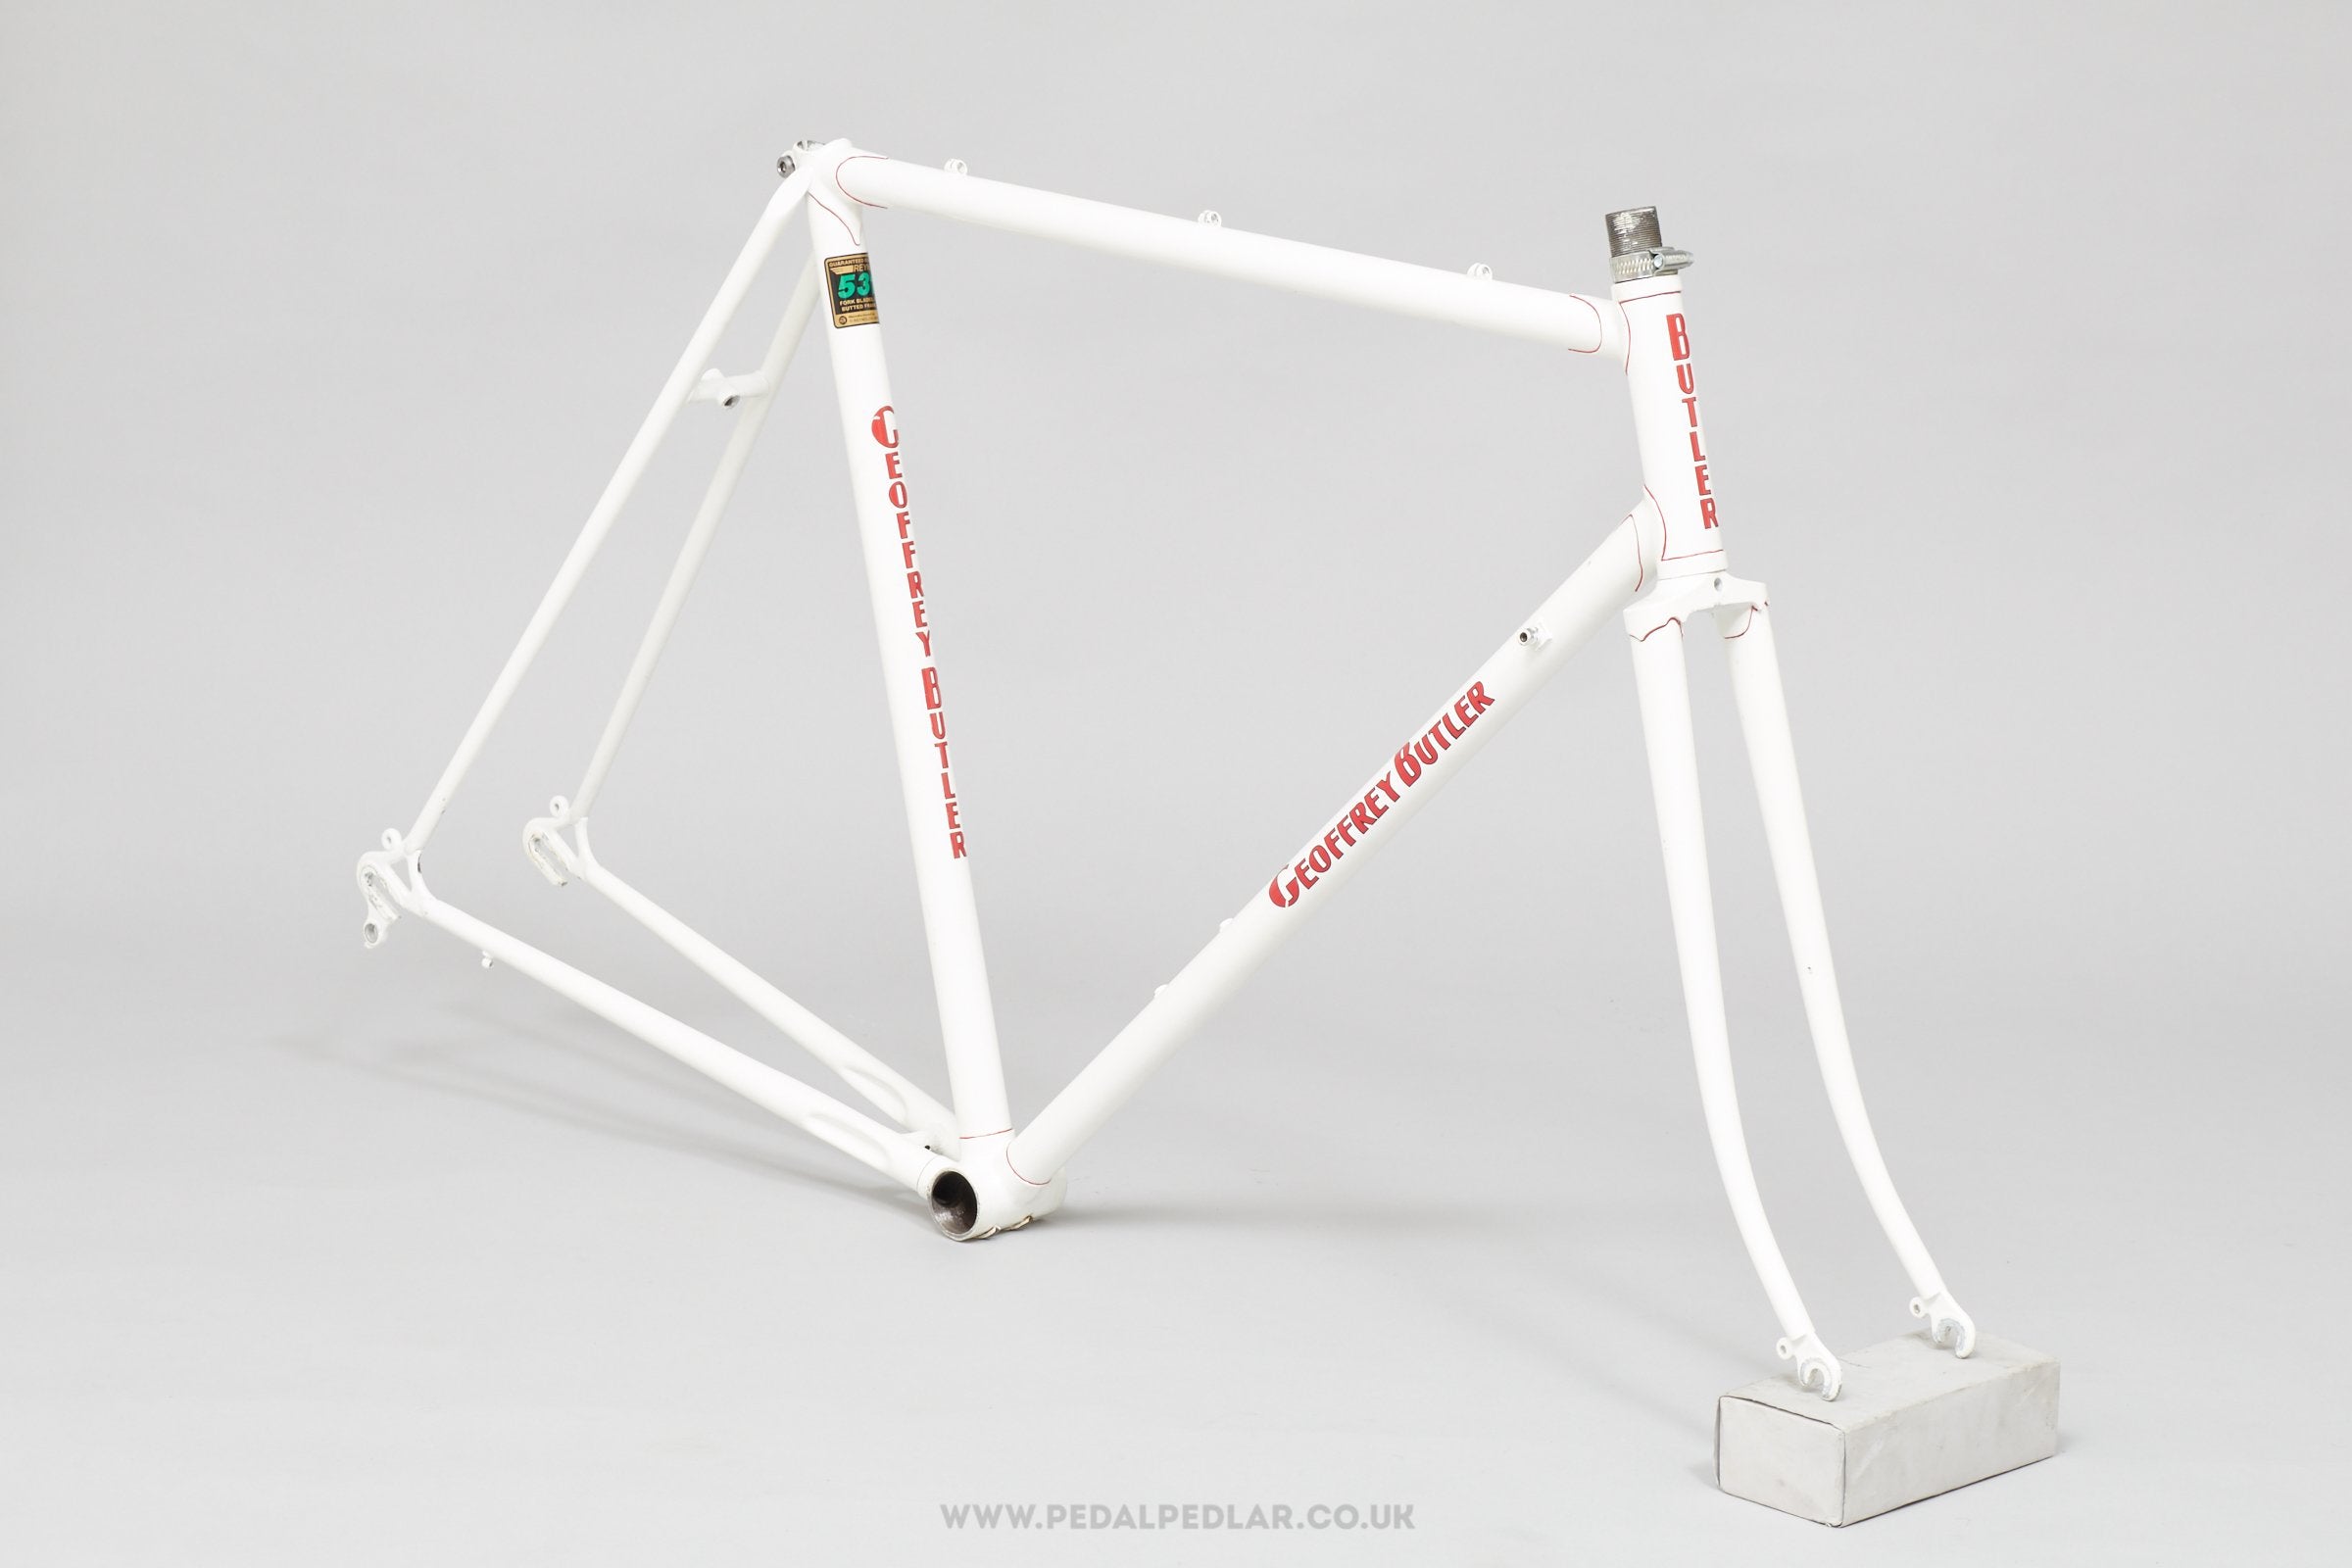 56cm Geoffrey Butler Vintage British Road Bike Frame - Pedal Pedlar - Framesets For Sale